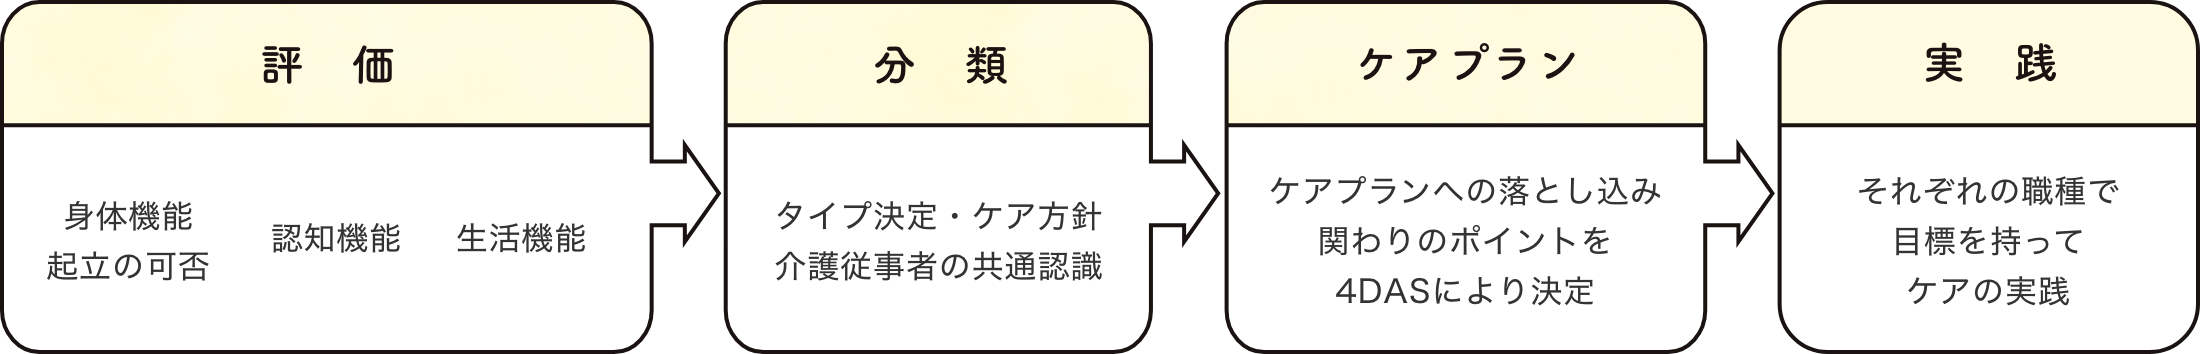 評価→分類→ケアプラン→実践